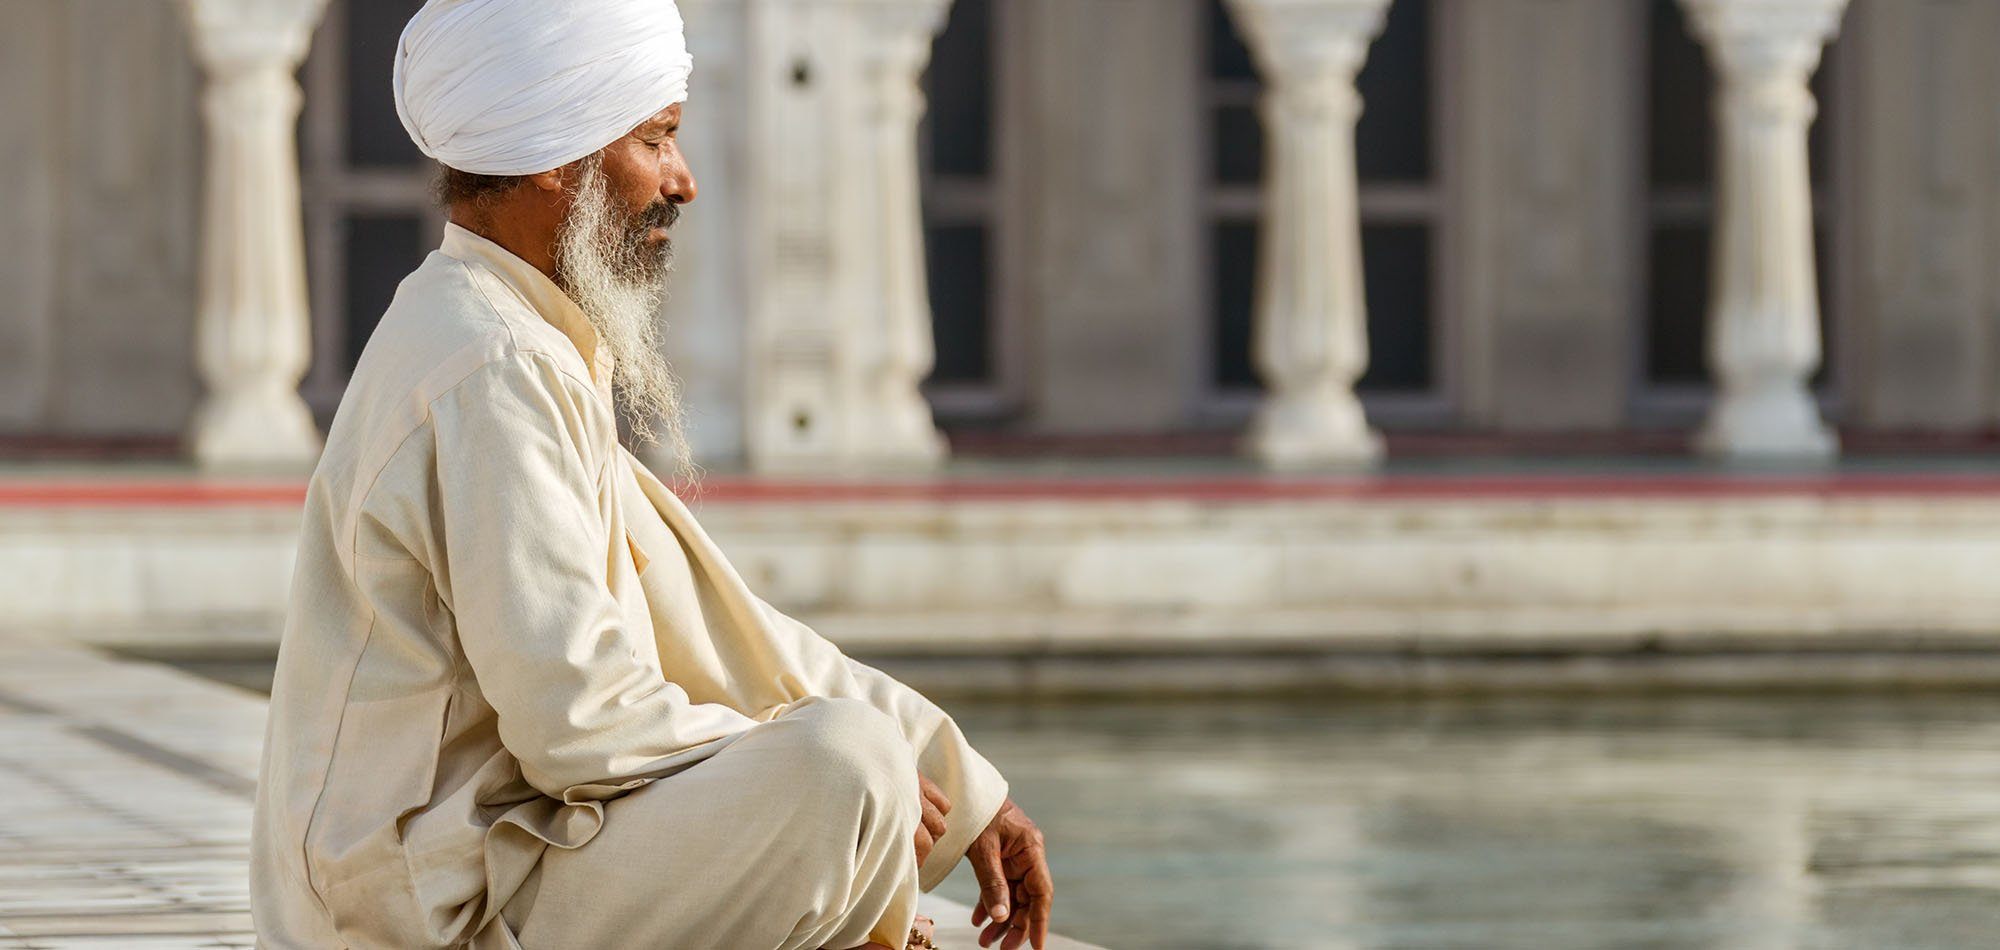 O Ponto de equilíbrio de um Sikh e sua barba